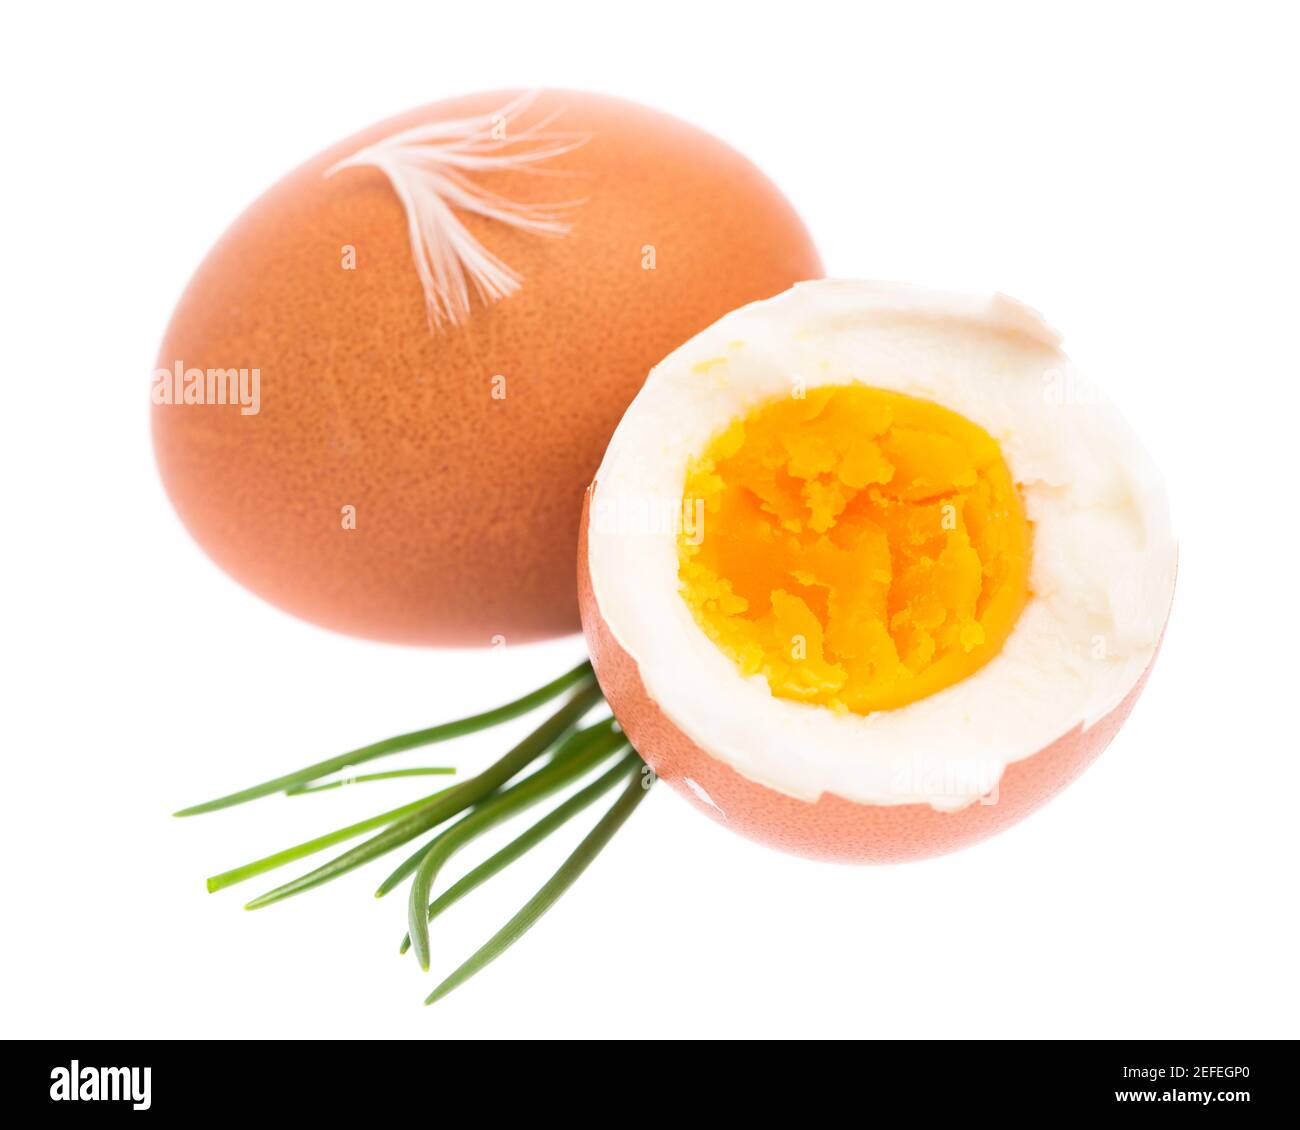 Uovo bollito con erba cipollina su fondo bianco Foto Stock